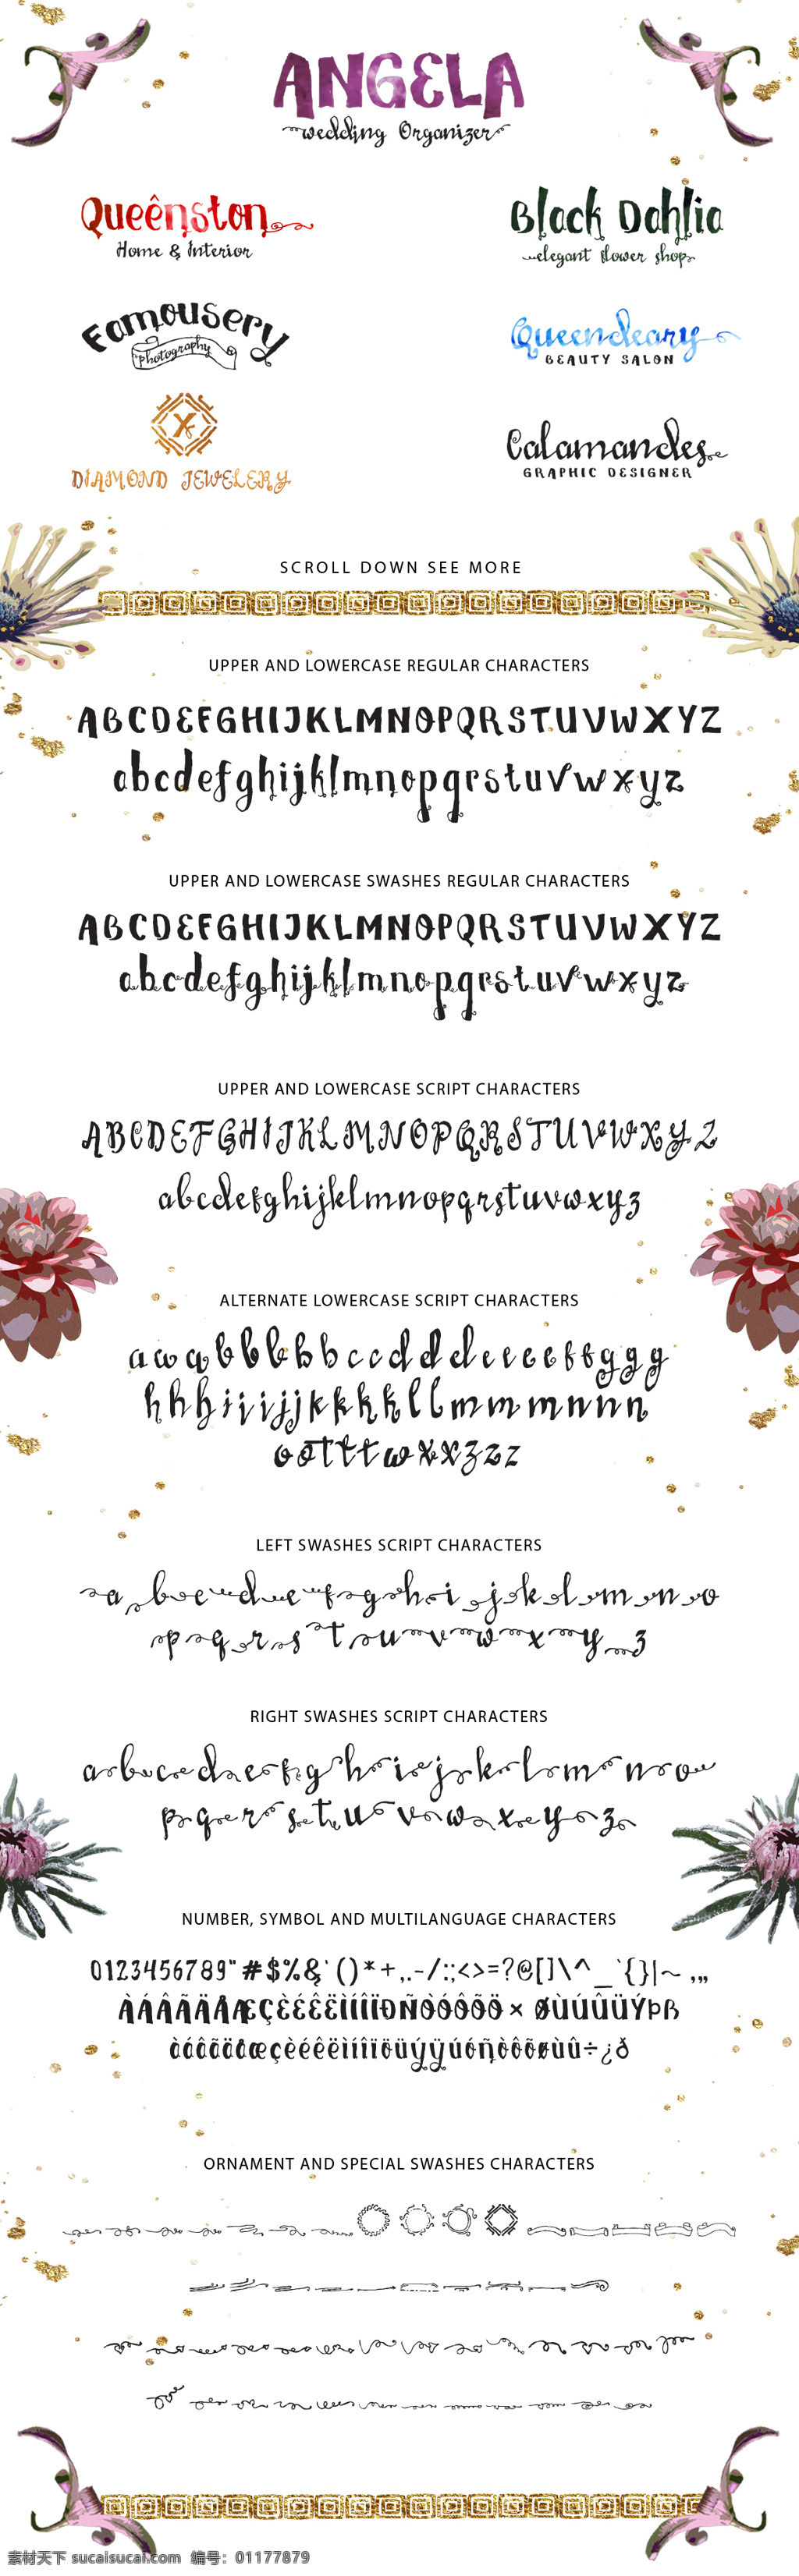 时尚 金色 手写 英文 ttf 创意字体 婚礼 印刷字体 英文字母 英文字体 字母 字体 字体库 字体设计